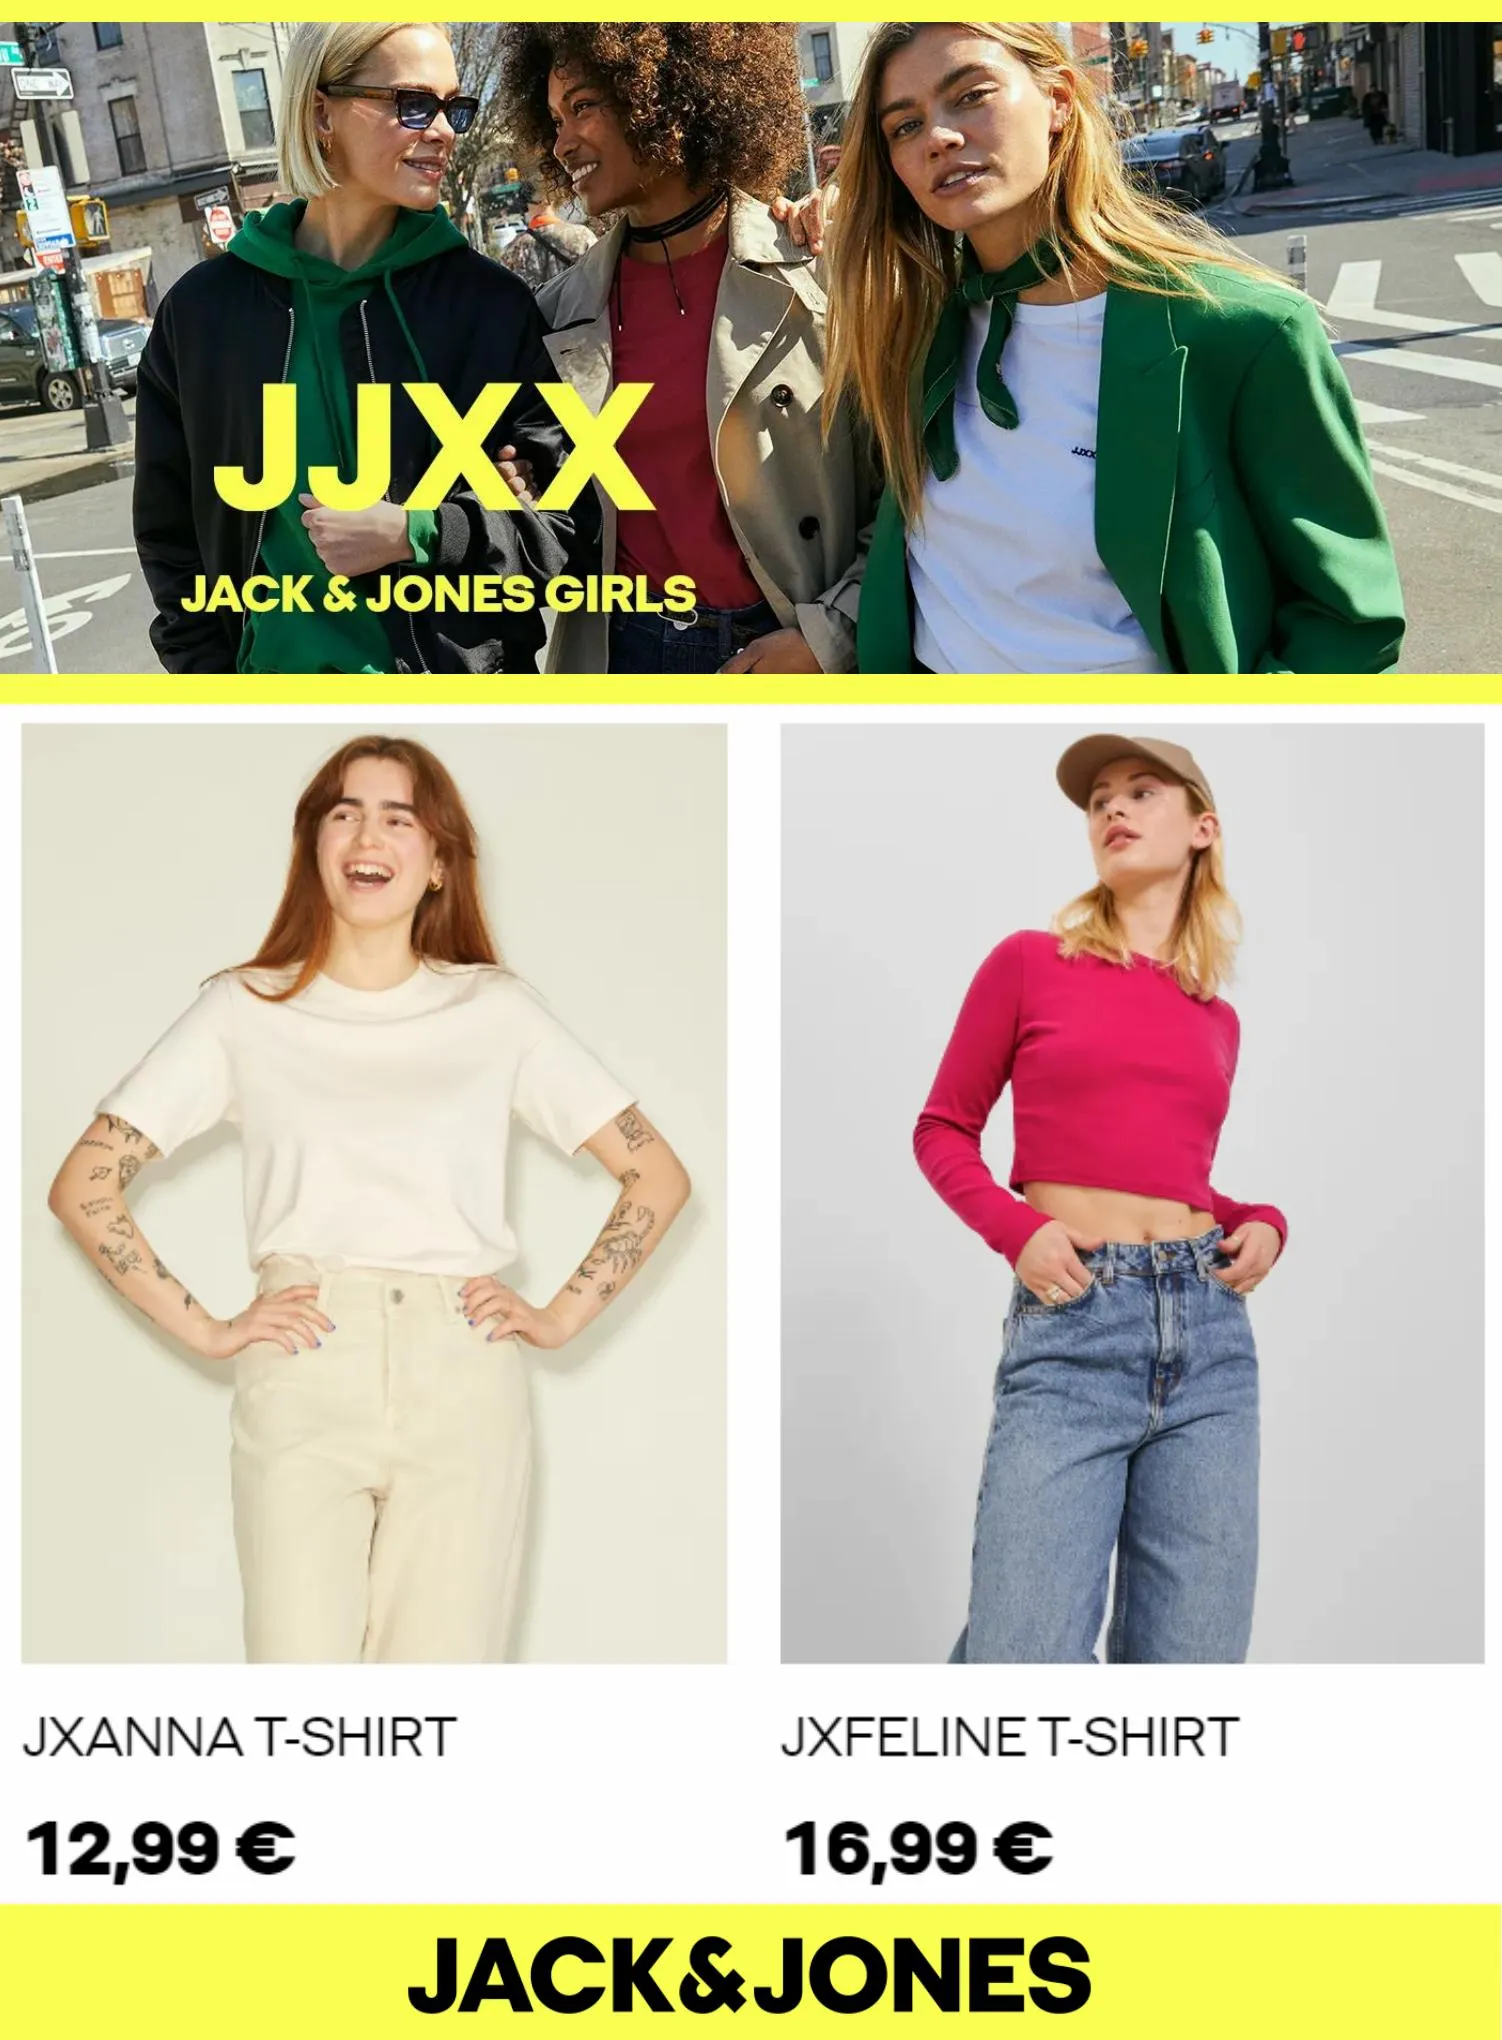 Catalogue JJXX Jack & Jones Girls, page 00004